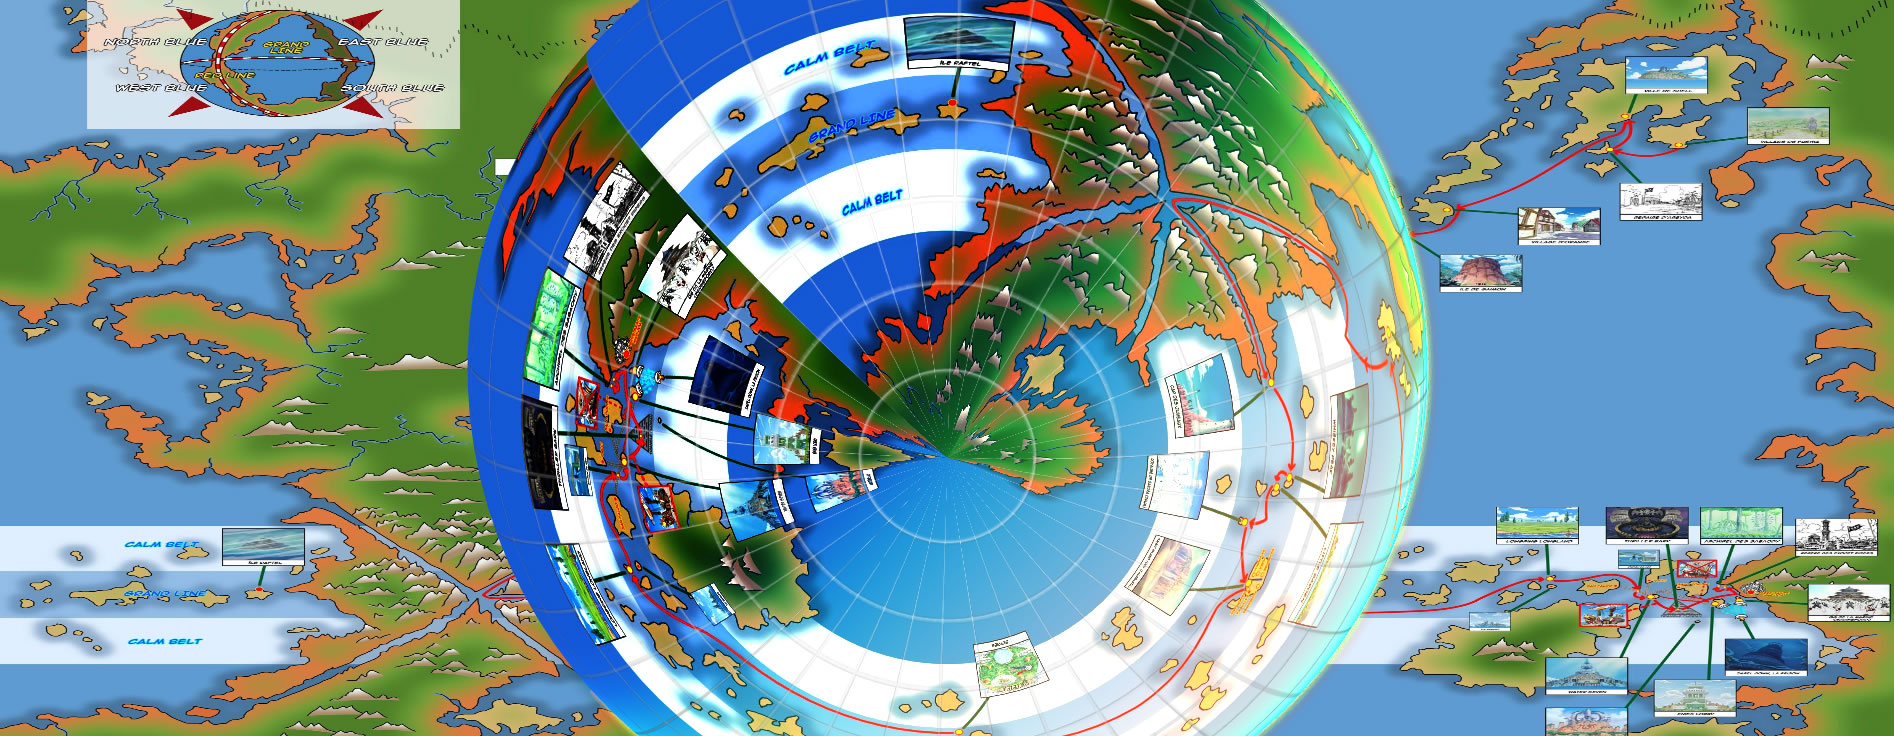 Toute Premiere Map Realiste Planete N 11 News Blue One Piece Univers